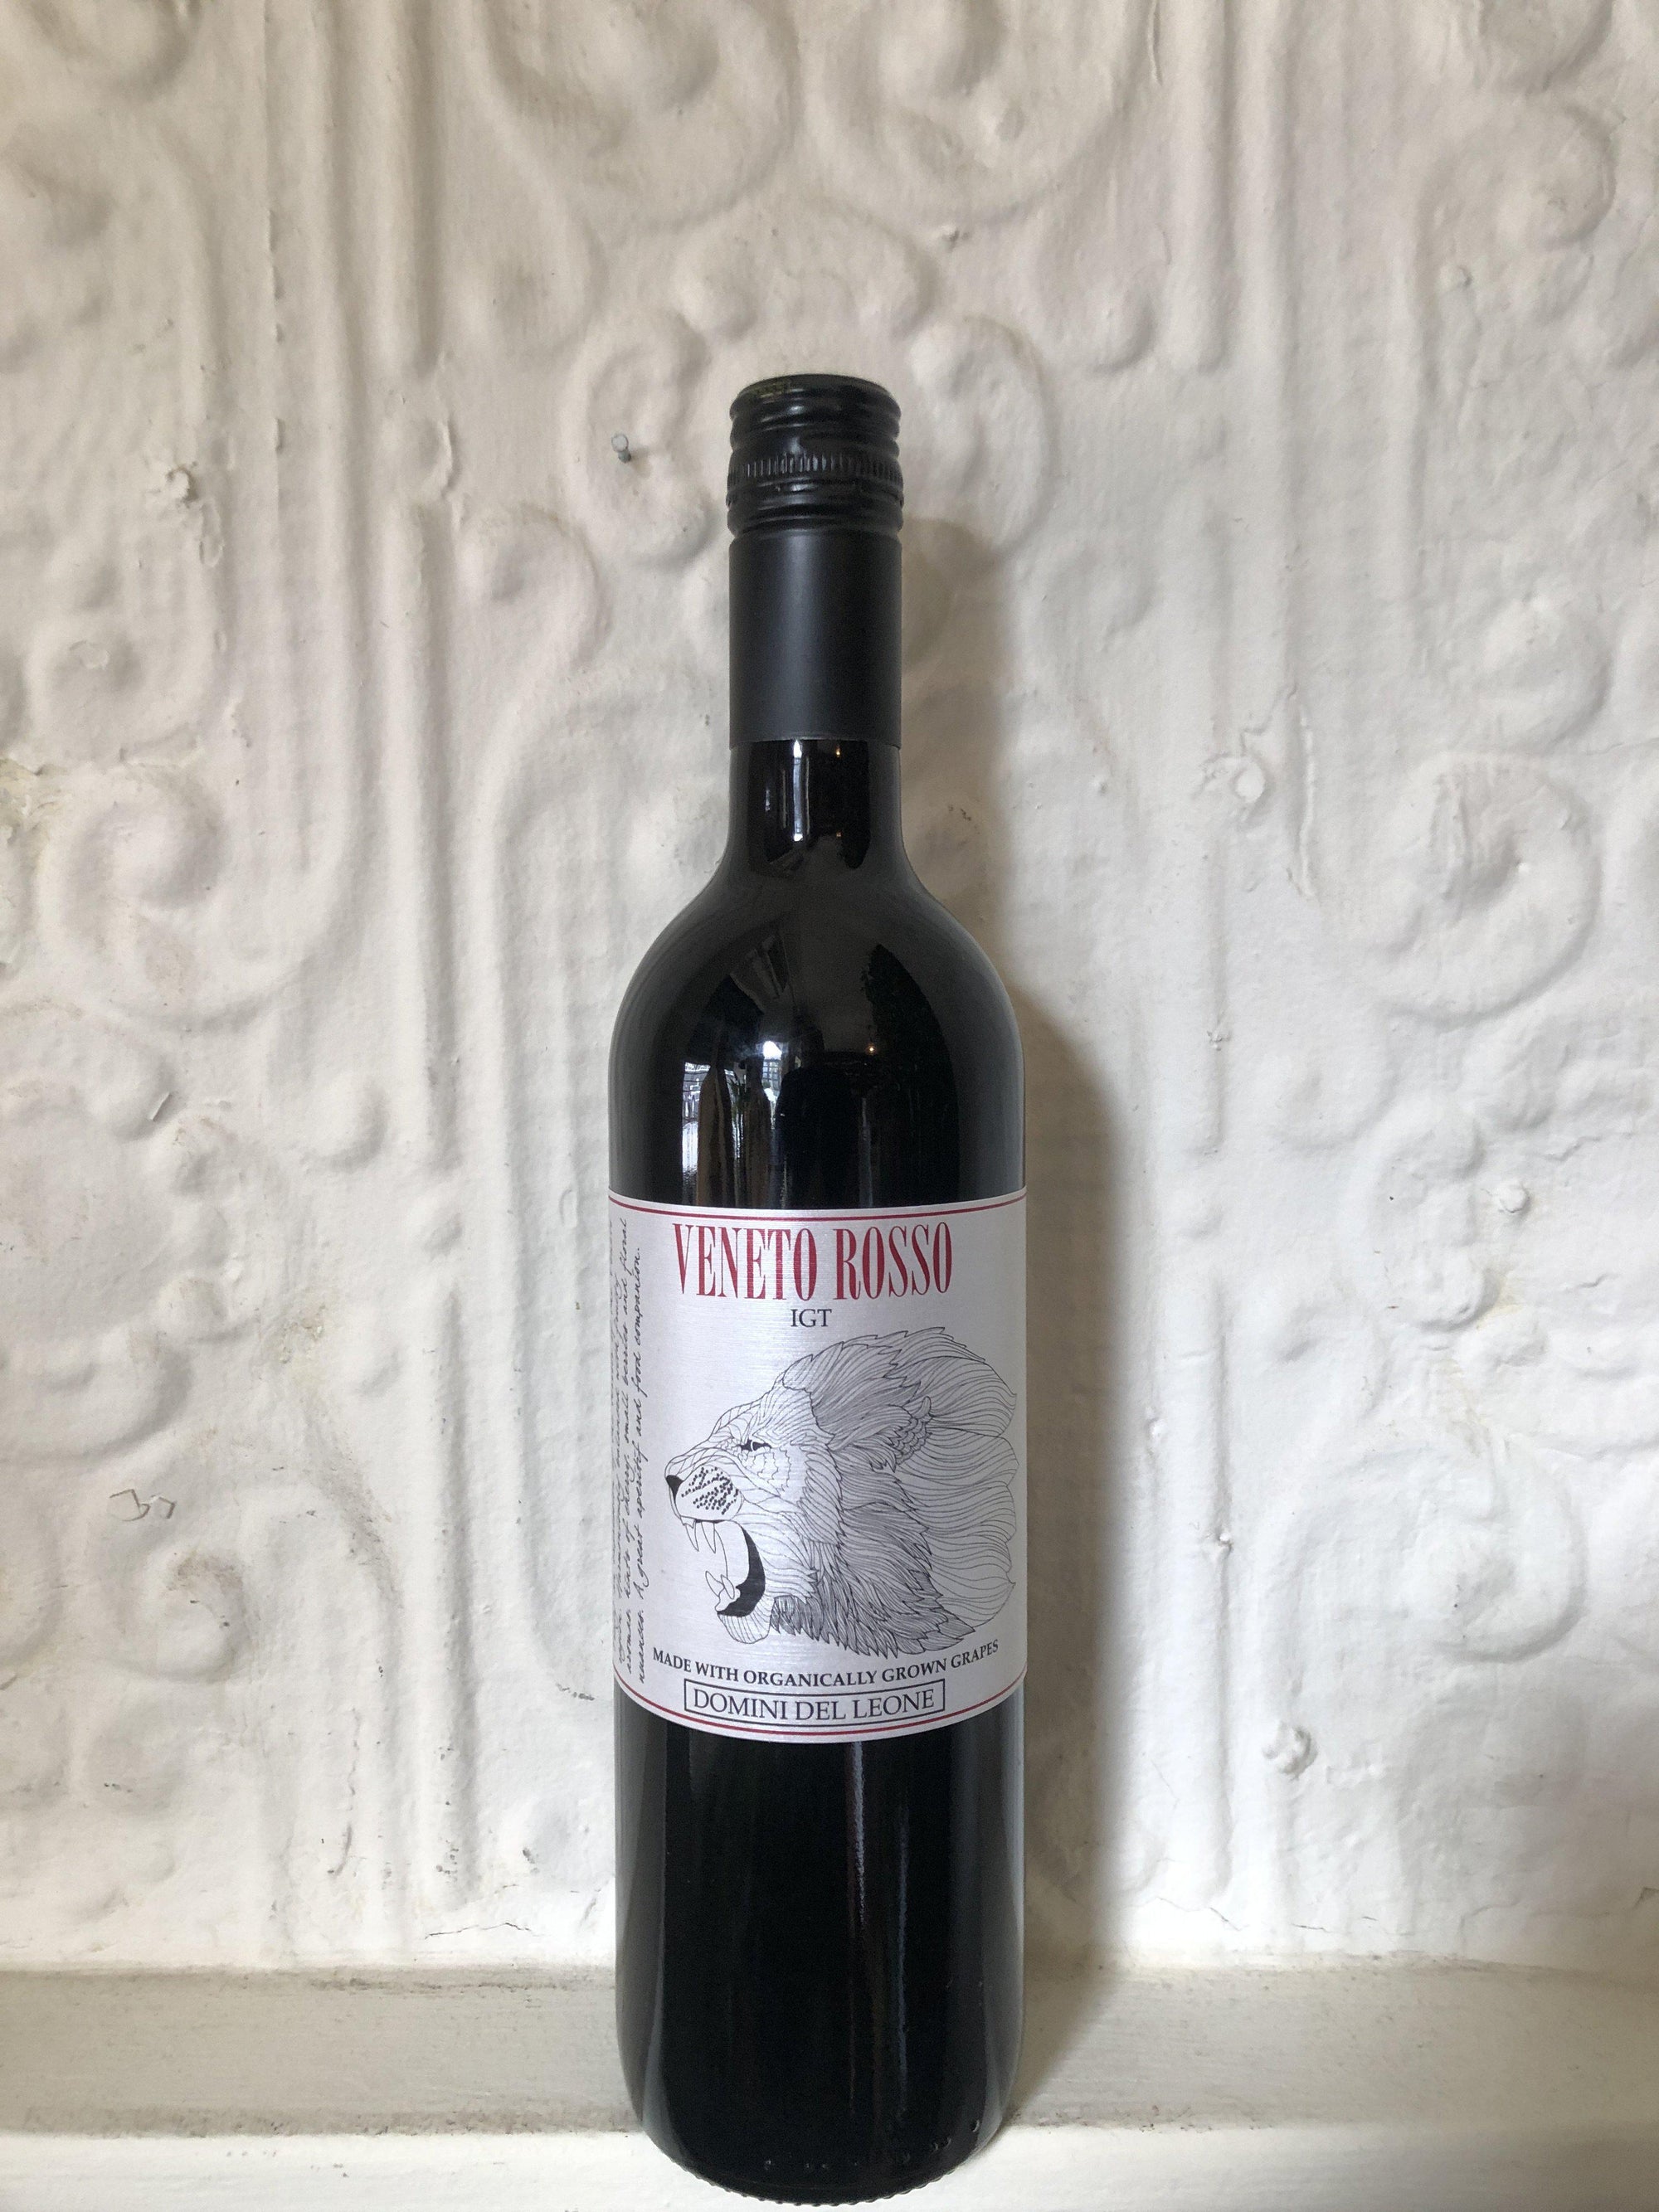 Veneto Rosso, Domini del Leone 2018 (Veneto, Italy)-Wine-Bibber & Bell